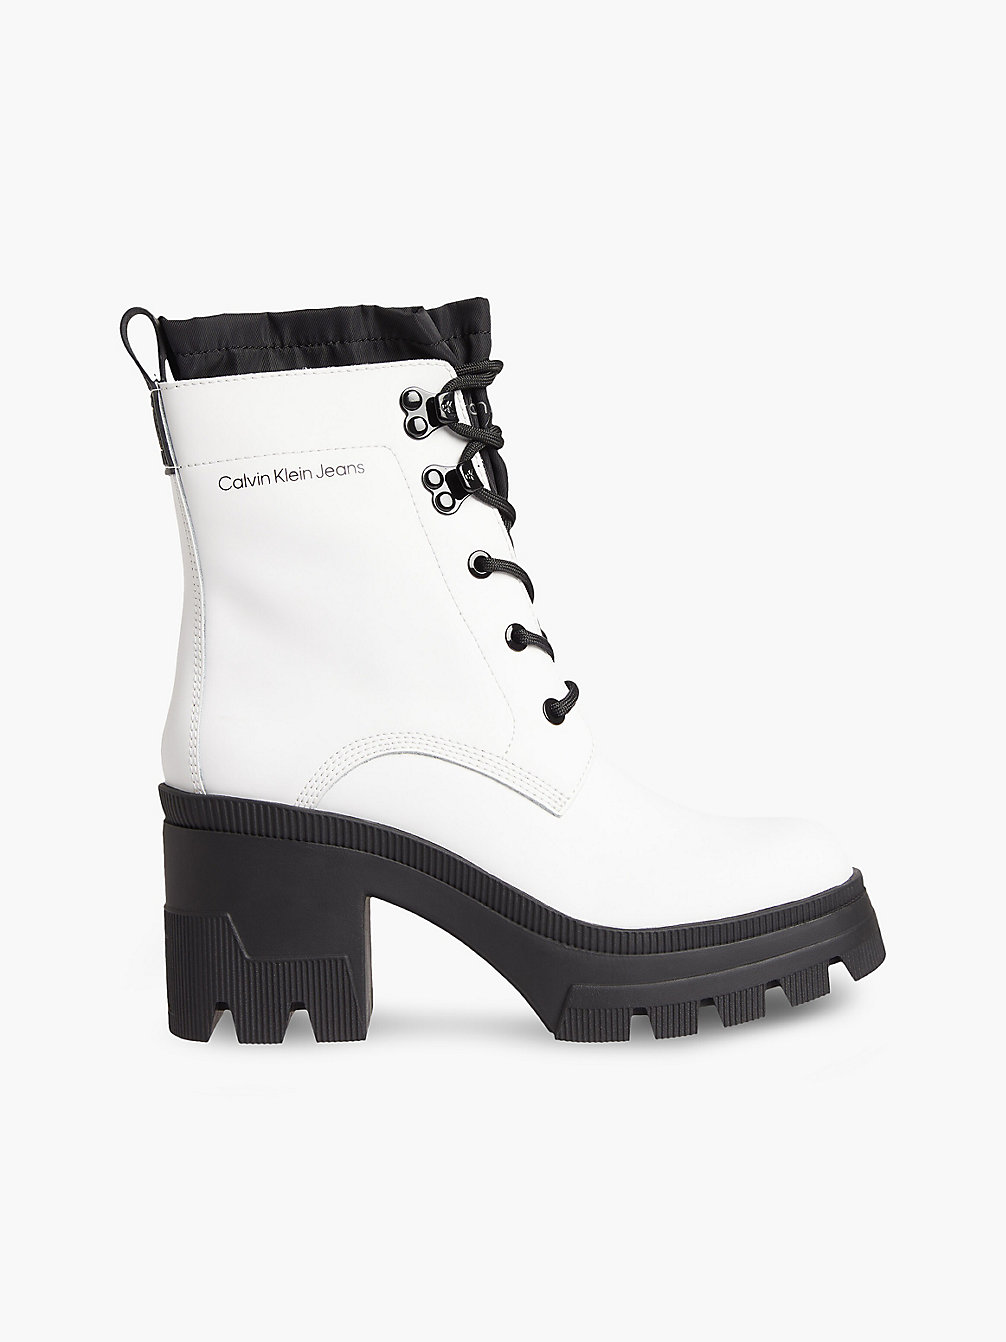 BRIGHT WHITE > Кожаные массивные сапоги на каблуках > undefined Женщины - Calvin Klein